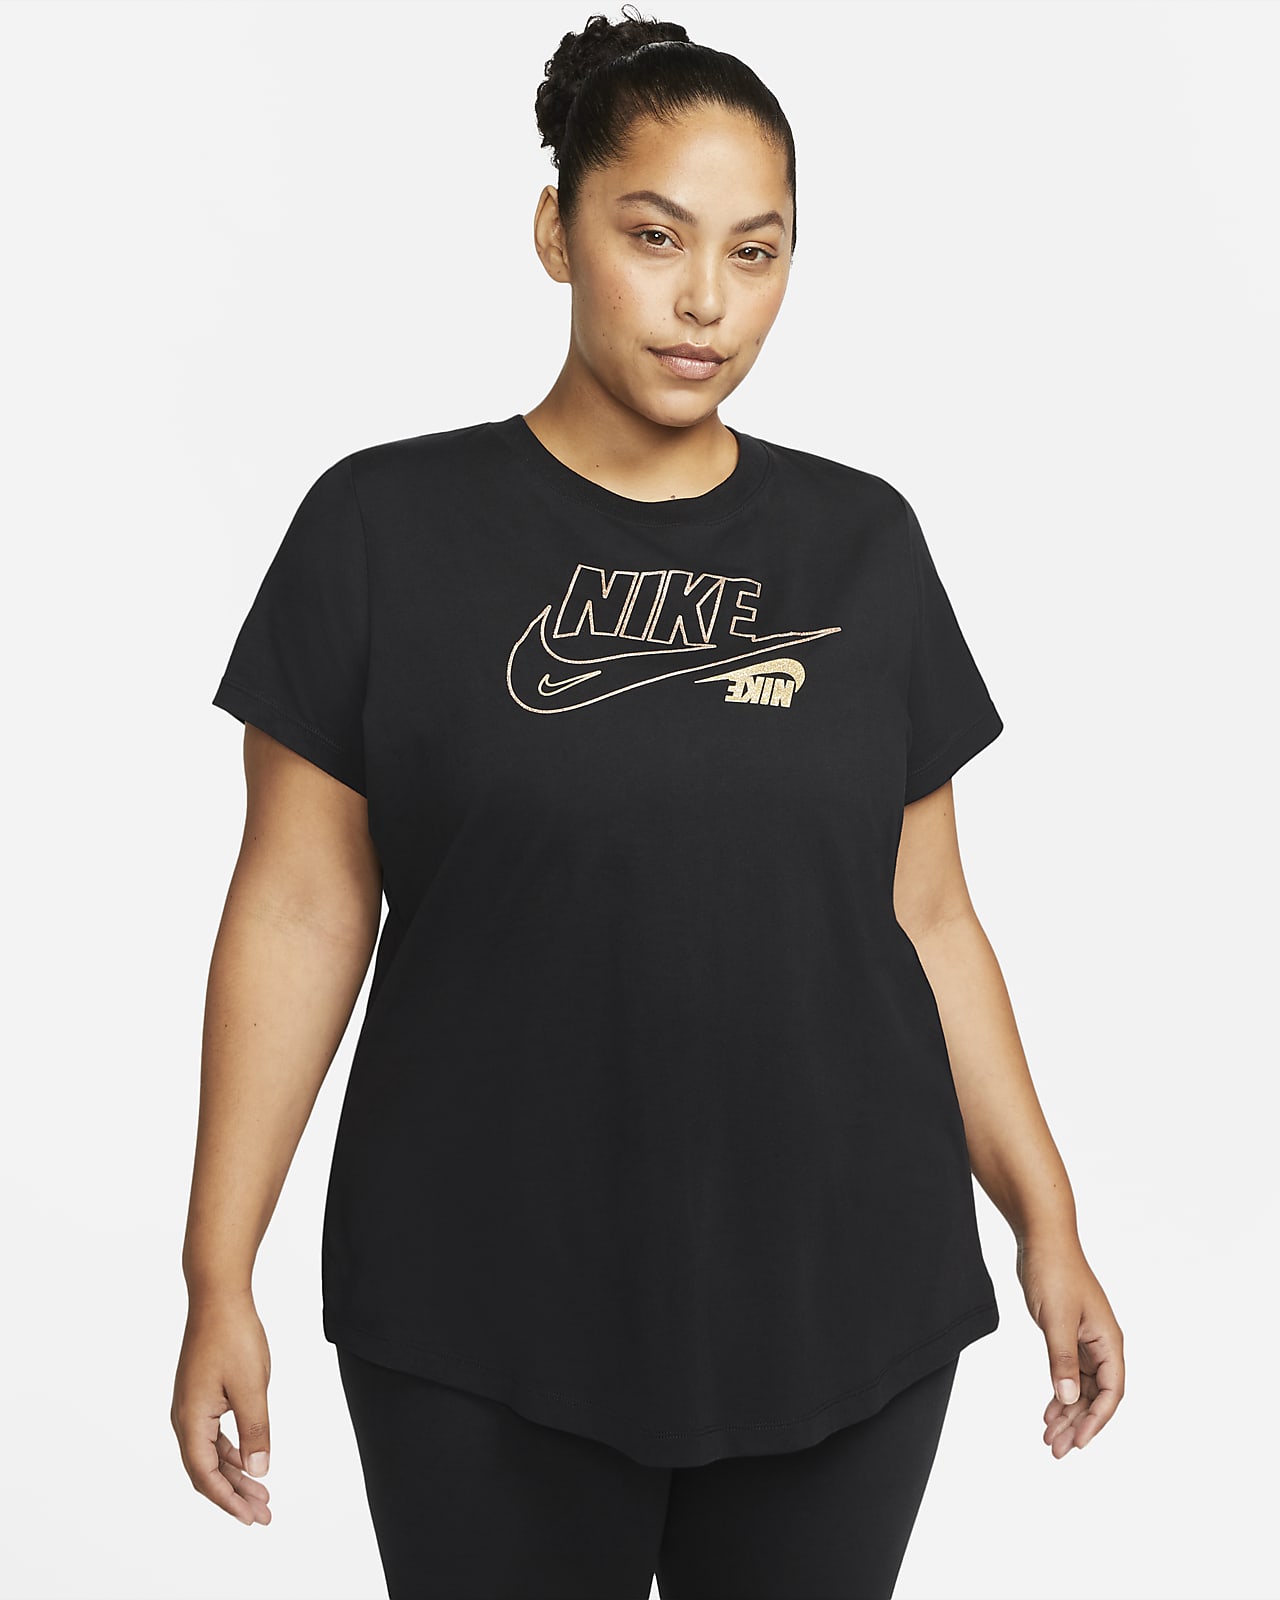 Hollow eksegese madras Nike Sportswear Women's Glitter T-Shirt (Plus Size). Nike.com